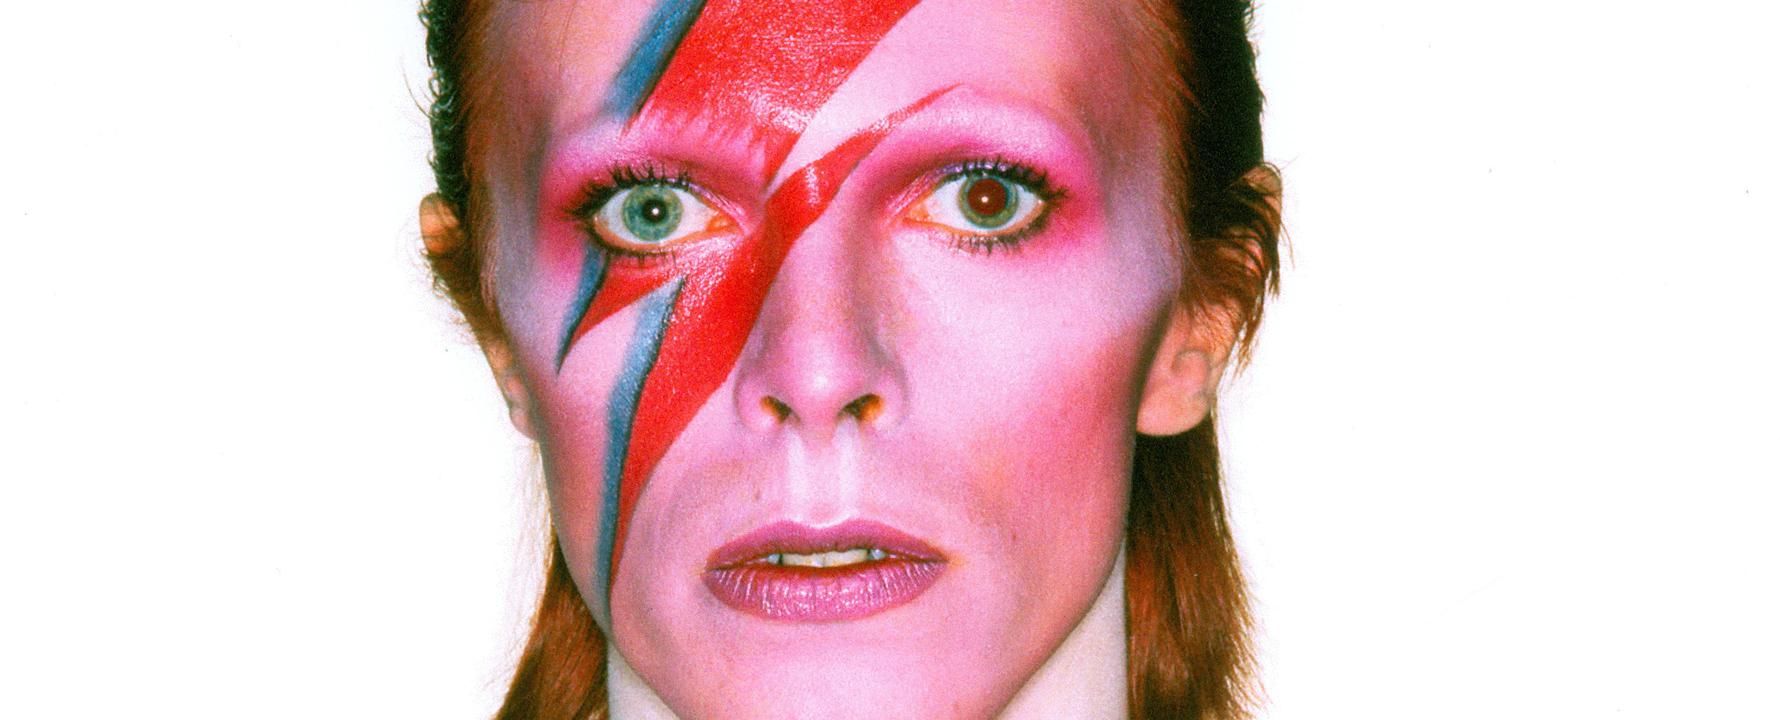 Fotografía promocional de David Bowie